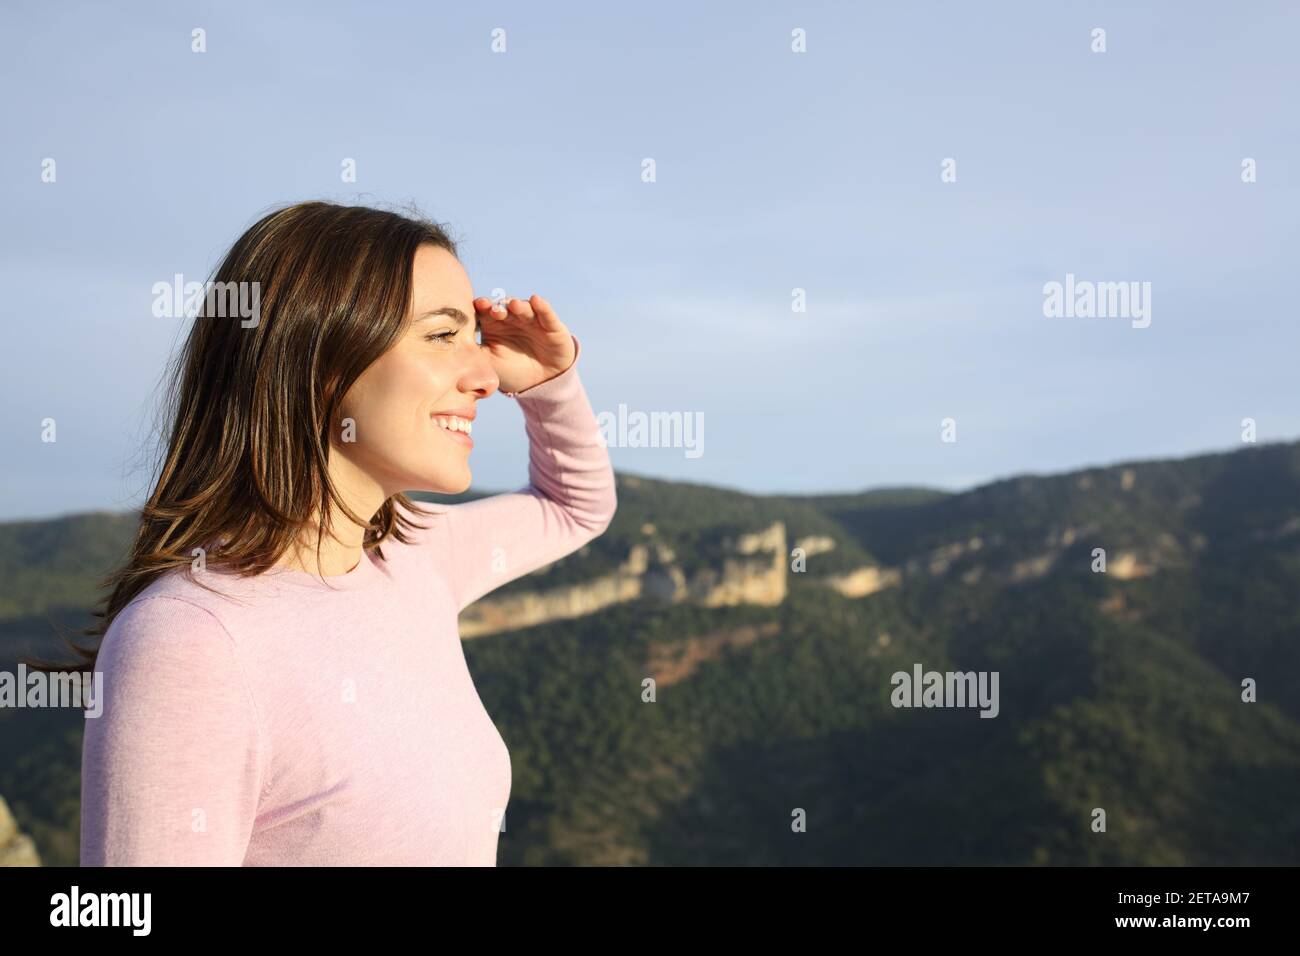 Profil einer glücklichen Frau, die sich mit Hand auf die Zukunft freut Stirn betrachtende Ansichten in den Berg Stockfoto